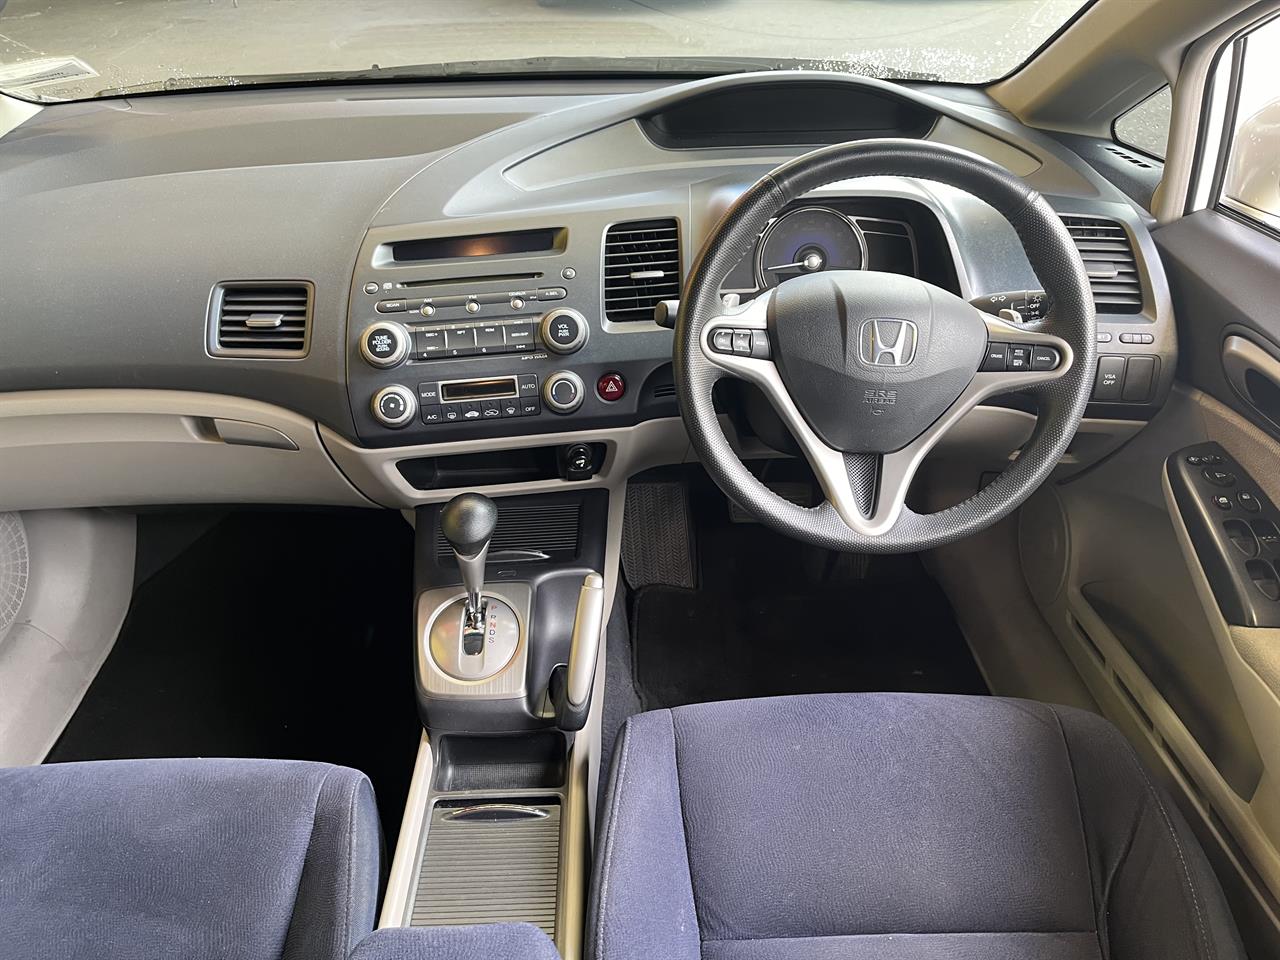 2008 Honda Civic